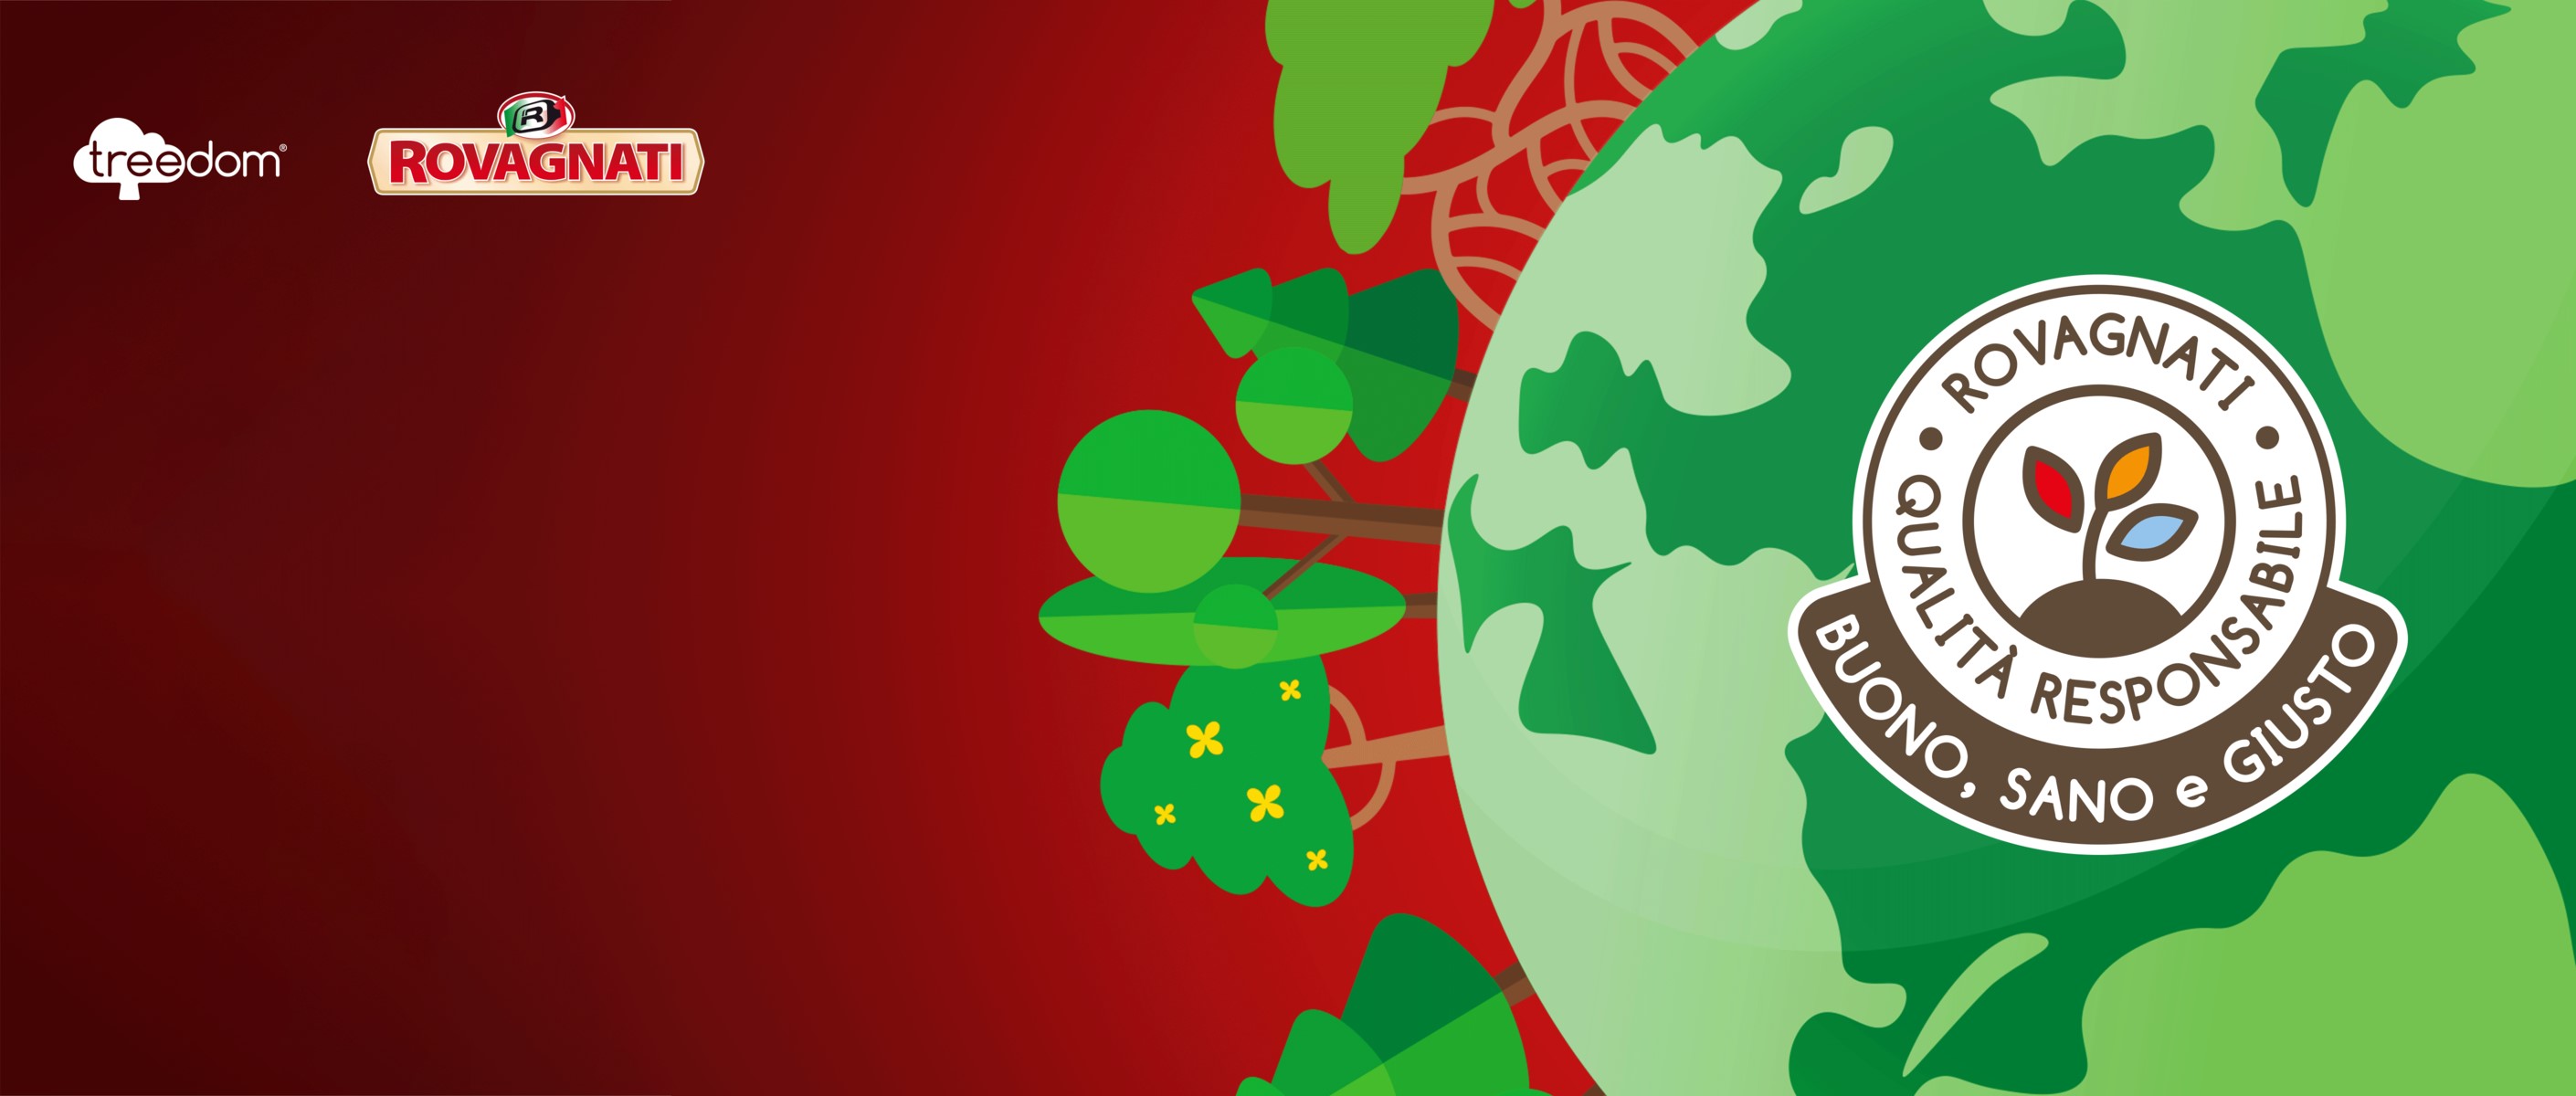 Green Retail  - Giornata Mondiale della Terra. Rovagnati rinnova la partnership con Treedom 